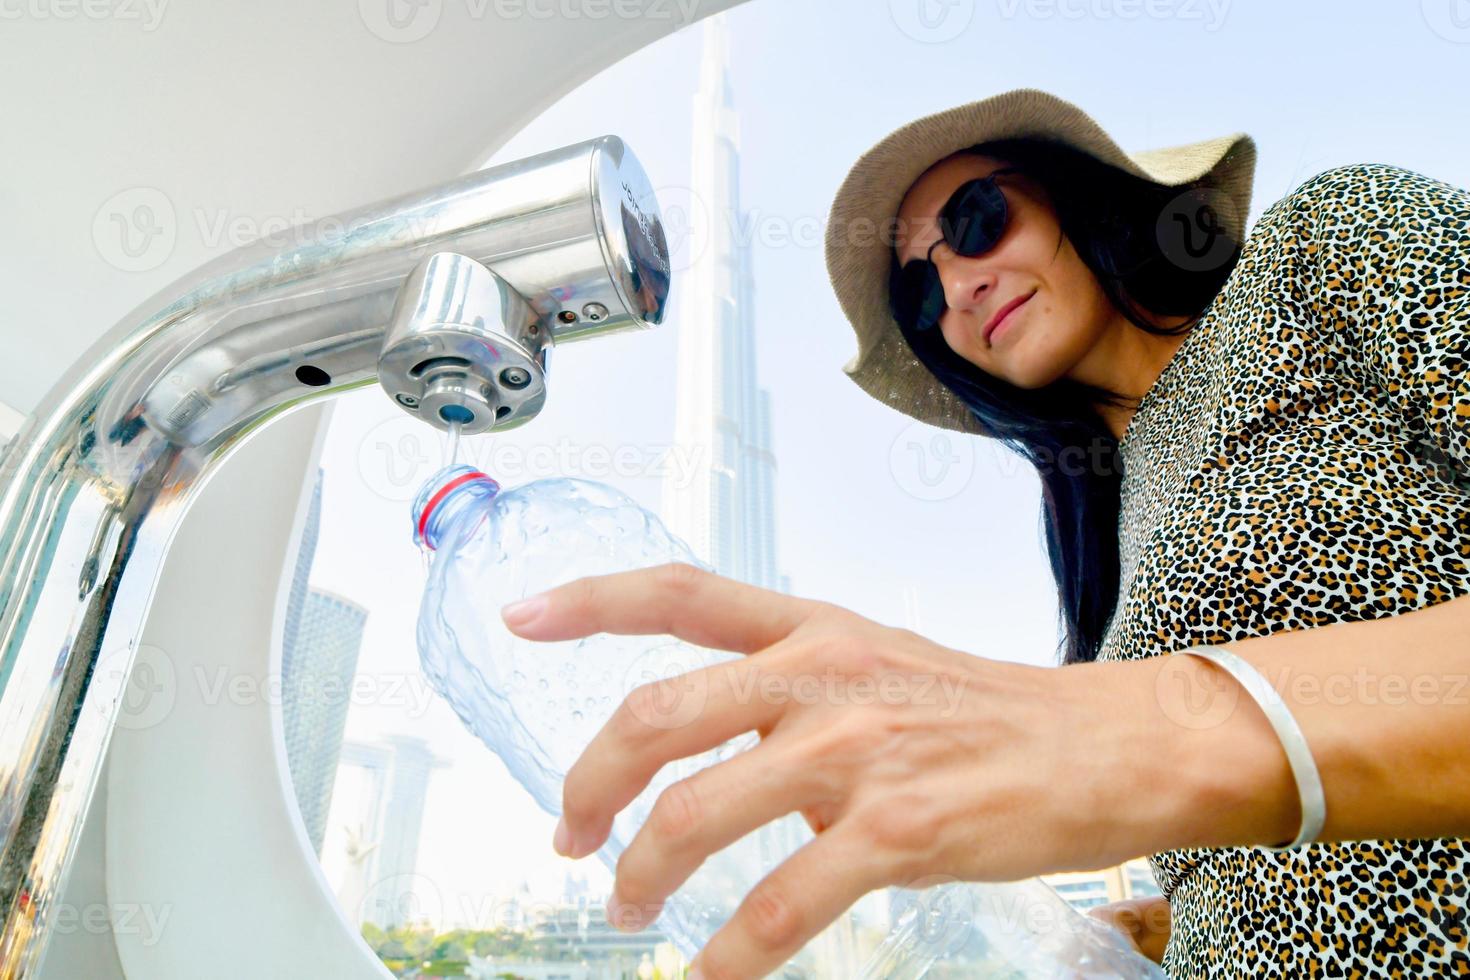 dubai, emirados árabes unidos, 2022 - mulher turista usa máquinas de recarga de água em locais públicos para turistas. salve a terra, economize água e reduza o conceito de plástico foto